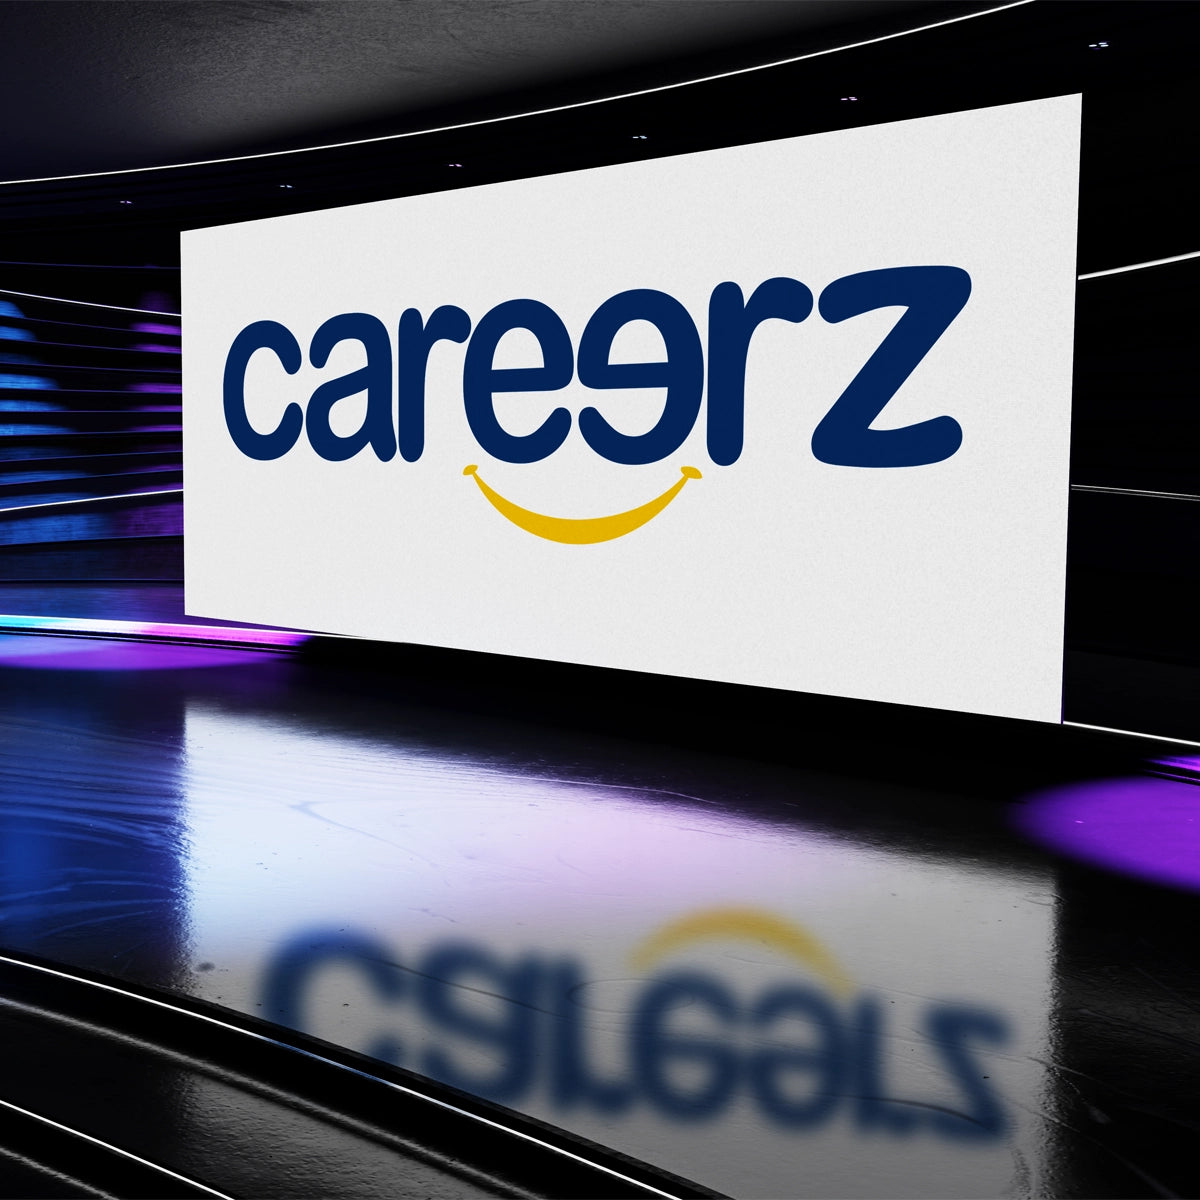 careerz.com